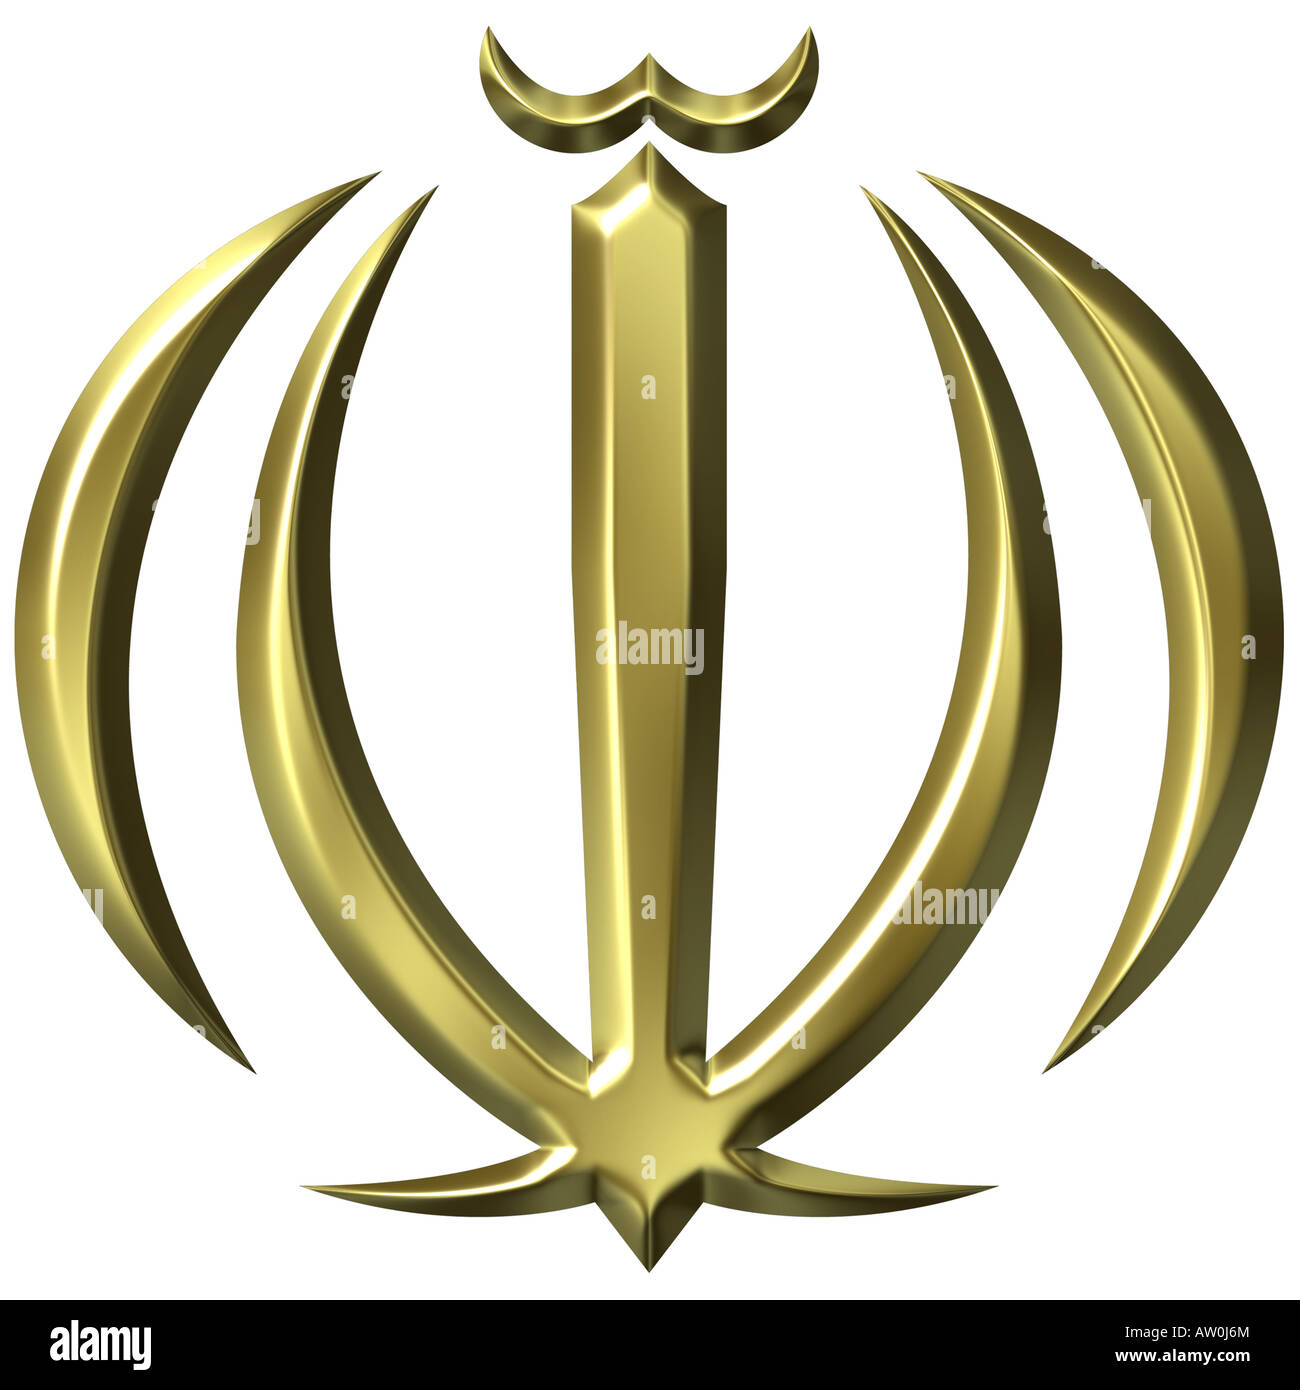 Golden 3d des armoiries de l'Iran Banque D'Images